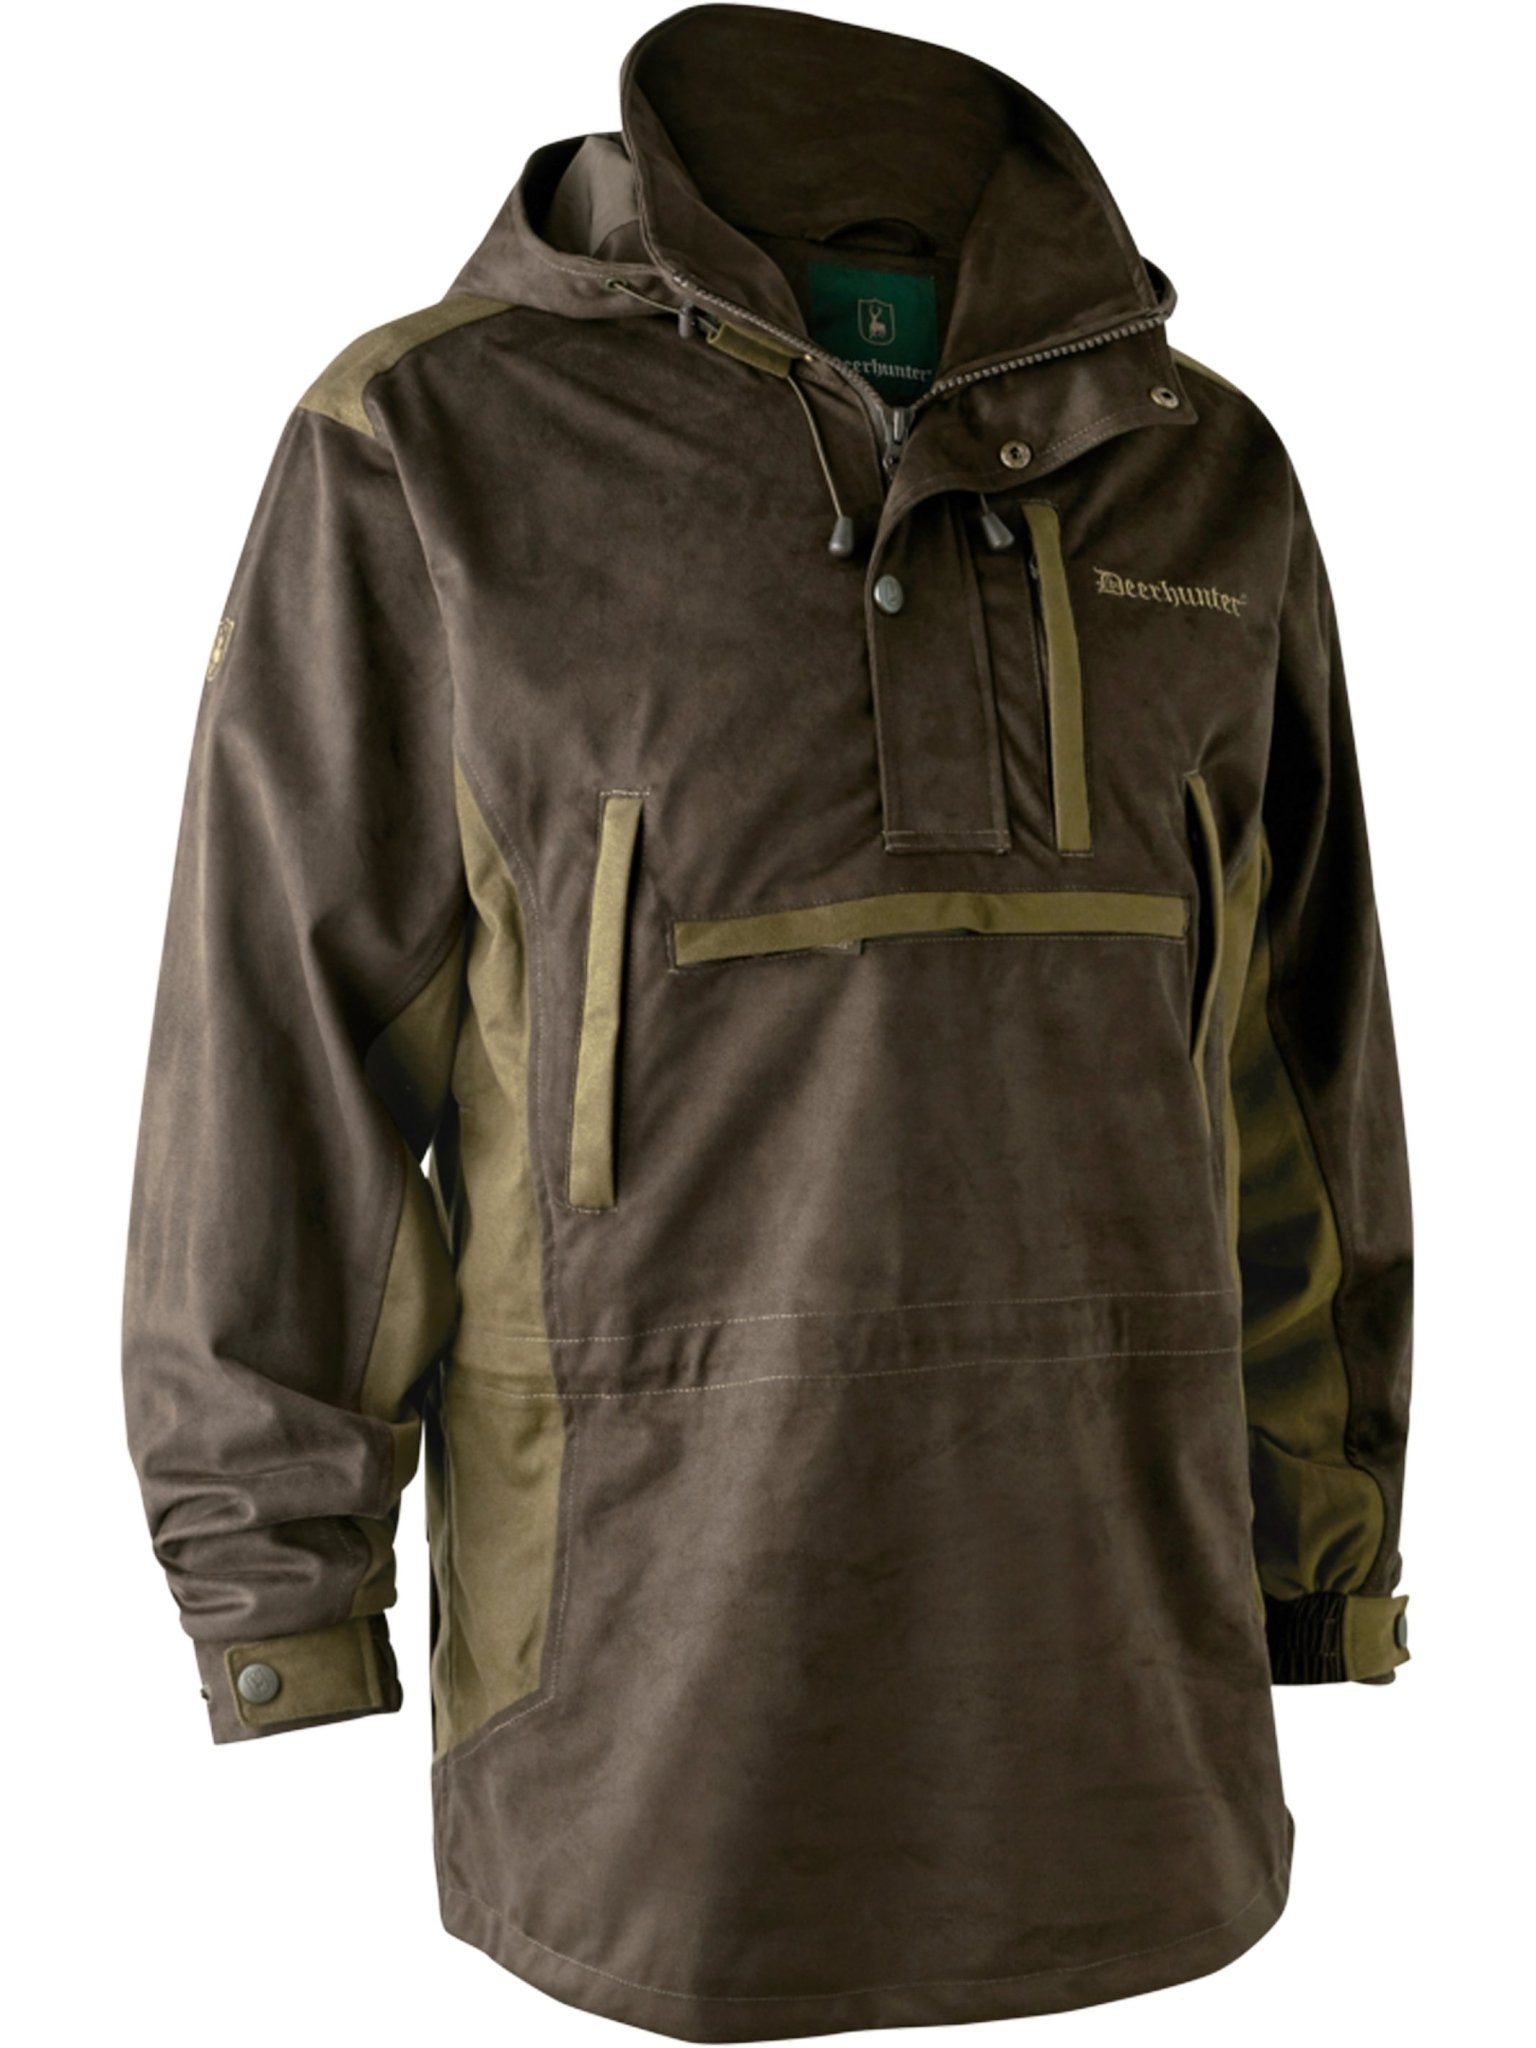 4elementsclothingDeerhunterDeerhunter - waterproof Smock Mens coat and jacket Explore, Breathable and taped seamsOuterwear5778-552-48